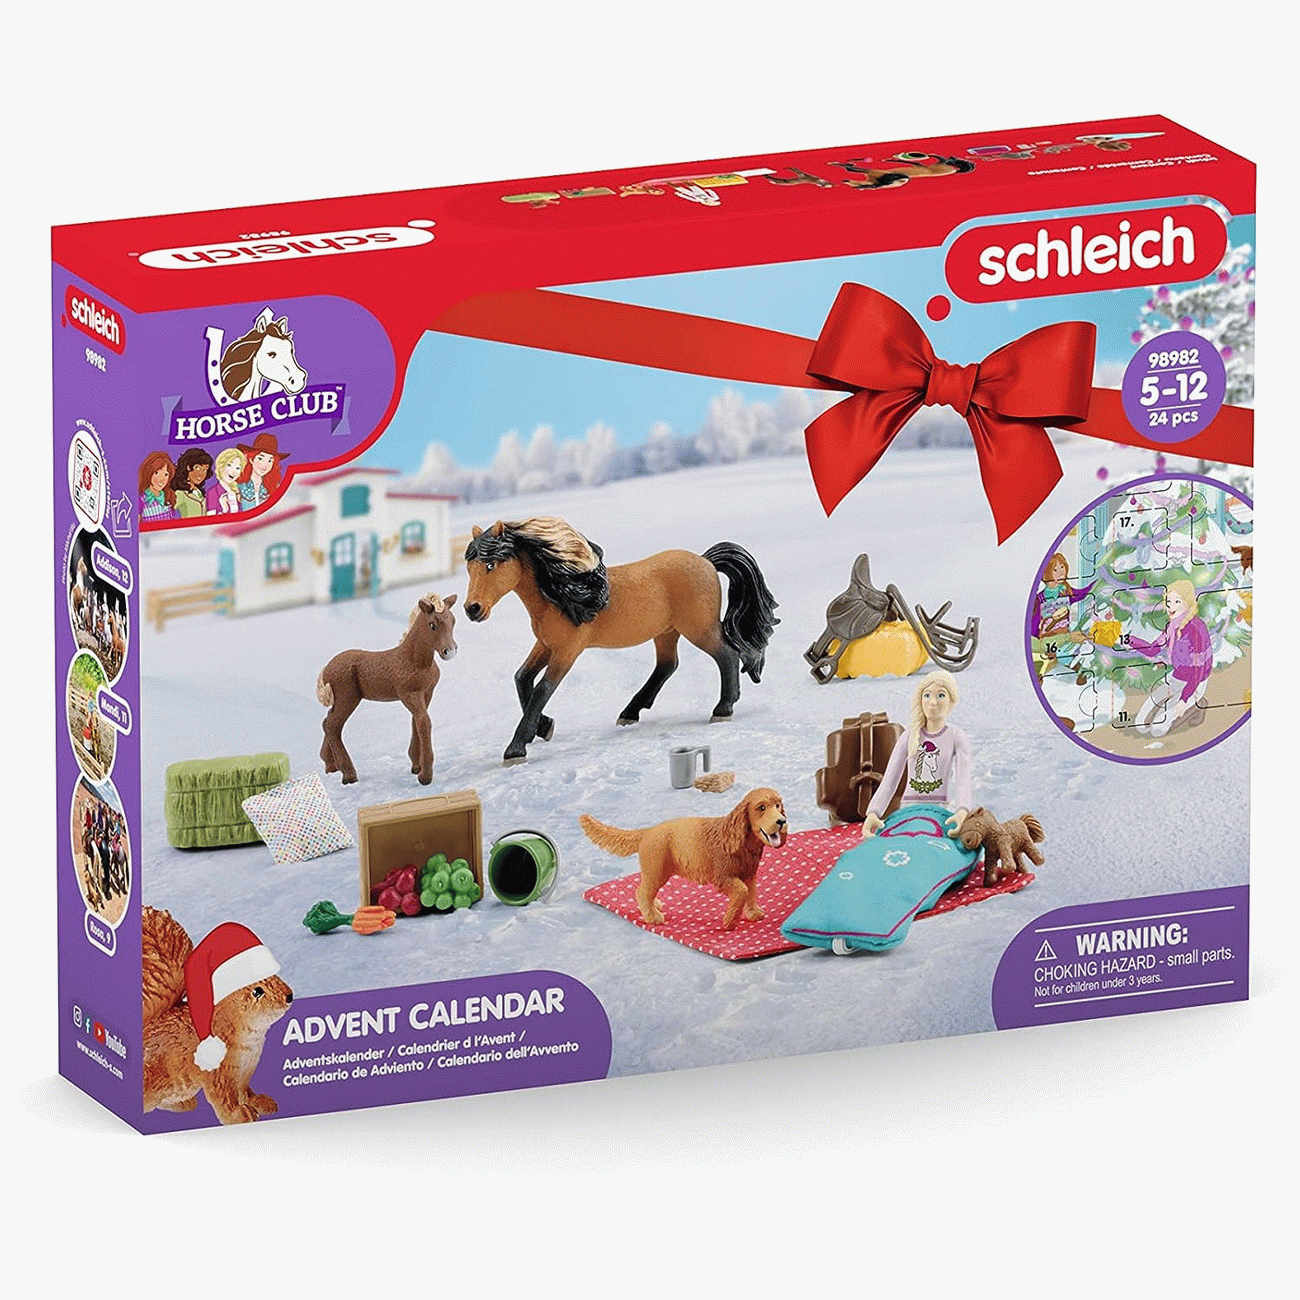 Schleich Adventskalender Horse Club Pferde 2023 (98982)